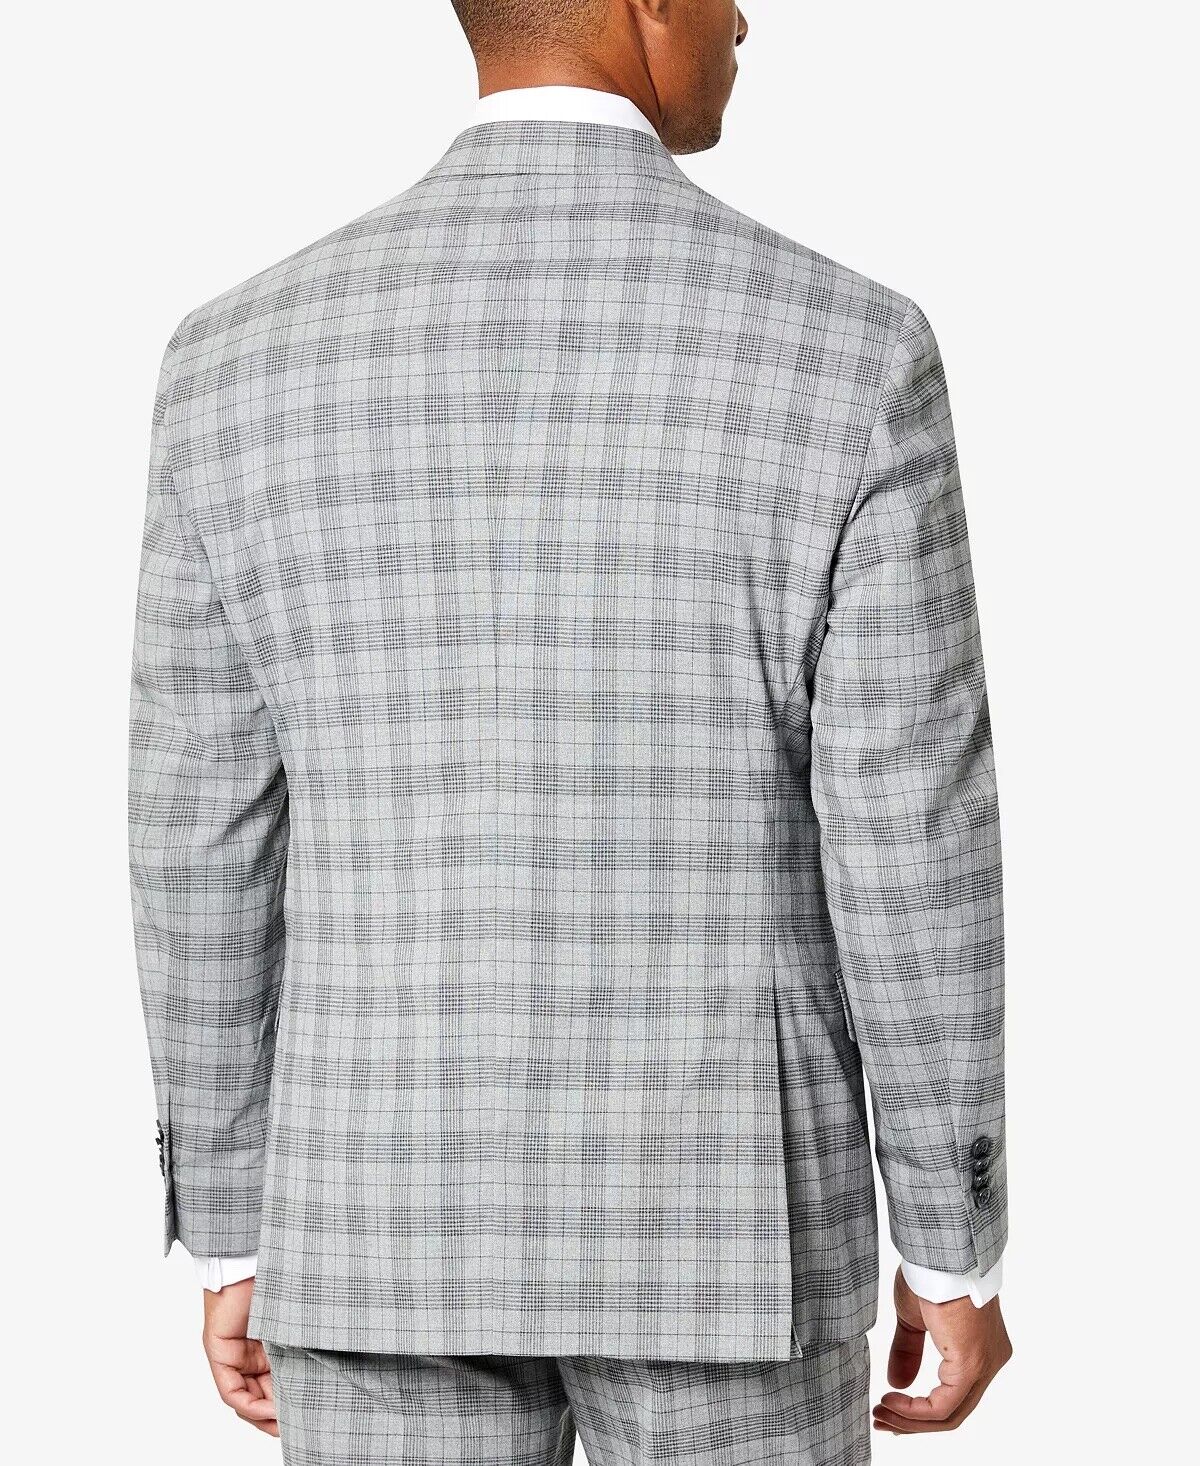 Sean John Men's Suit Jacket Grey Plaid 38R Classic Fit Patterned